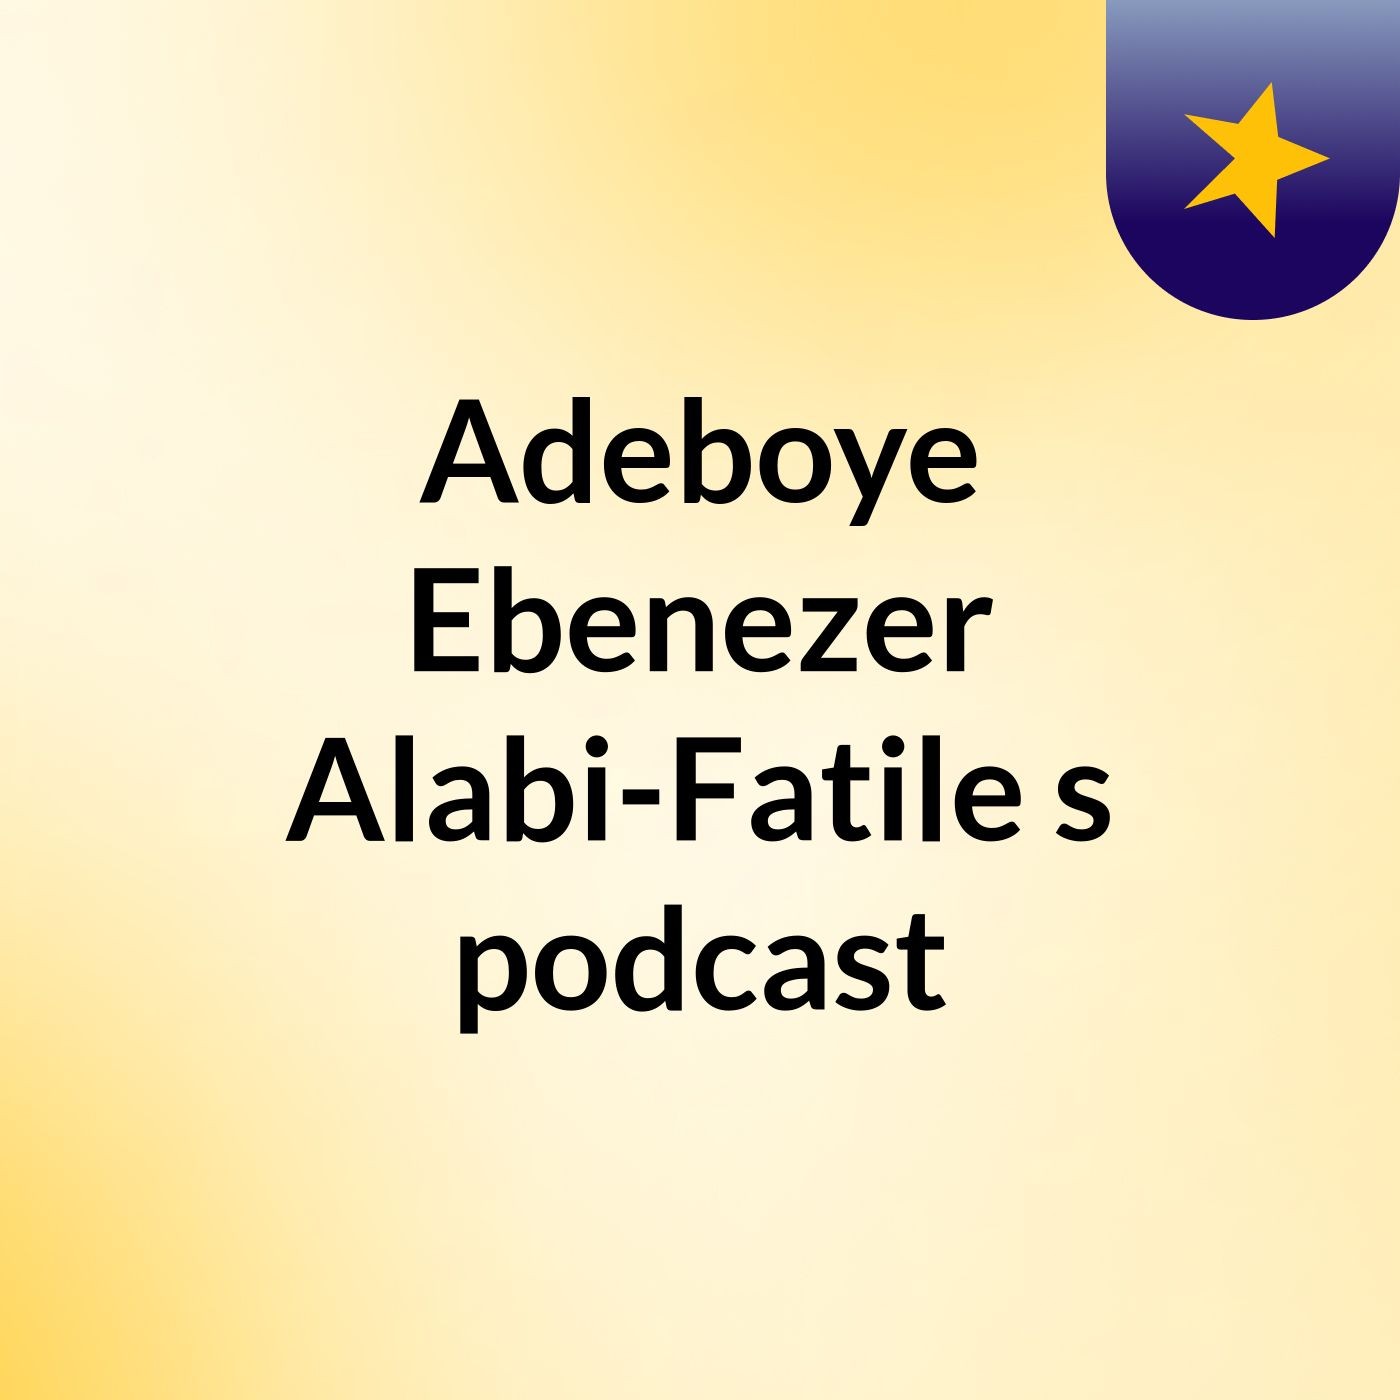 Episode 6 - ACT OF GRATITUDE by Adeboye Ebenezer Alabi-Fatile